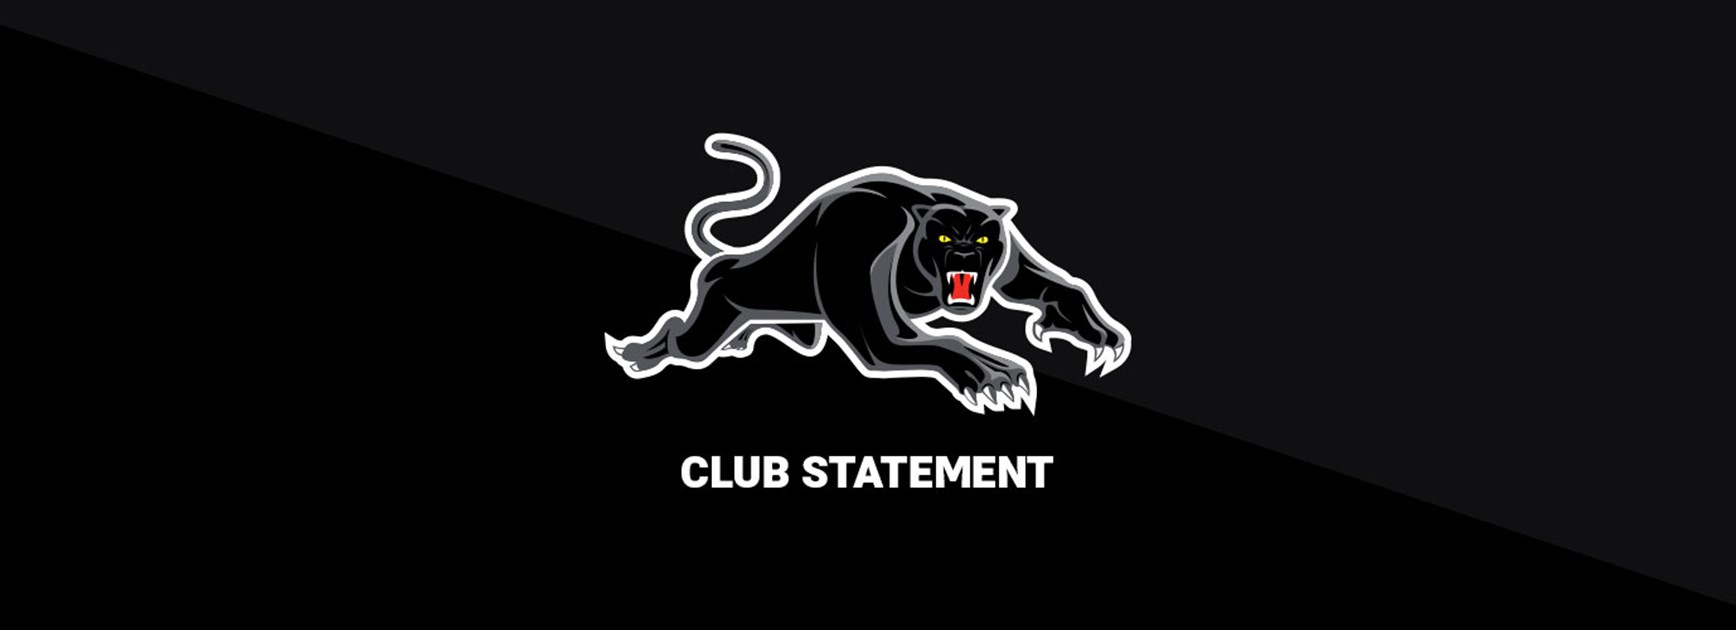 Club Statement: Brent Naden